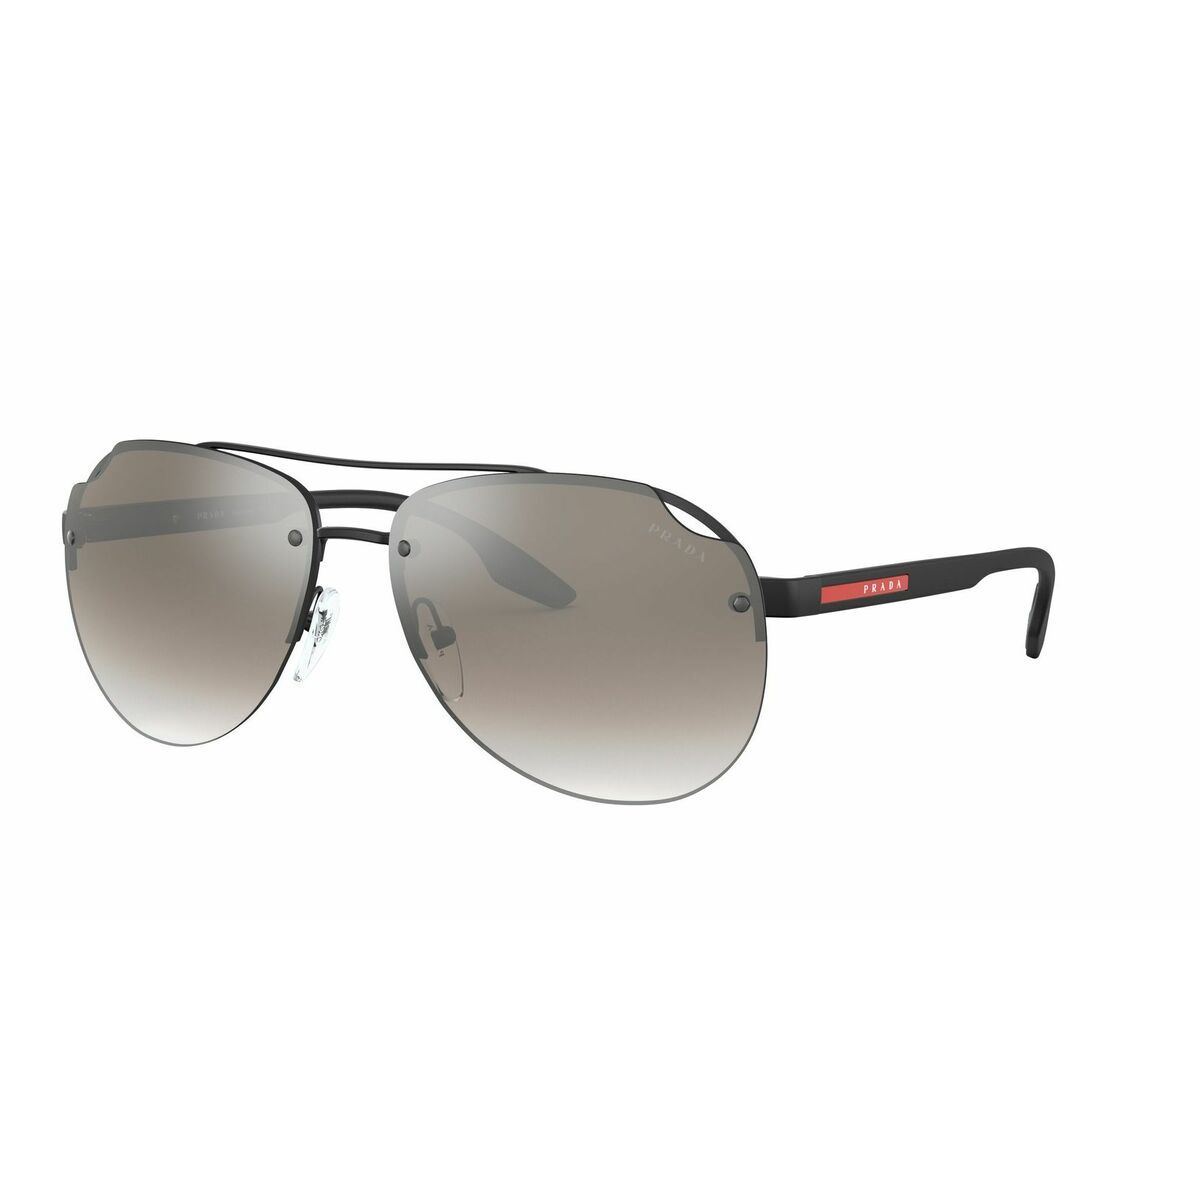 PS52VS Pilot Sunglasses 1BO5O0 - size 61